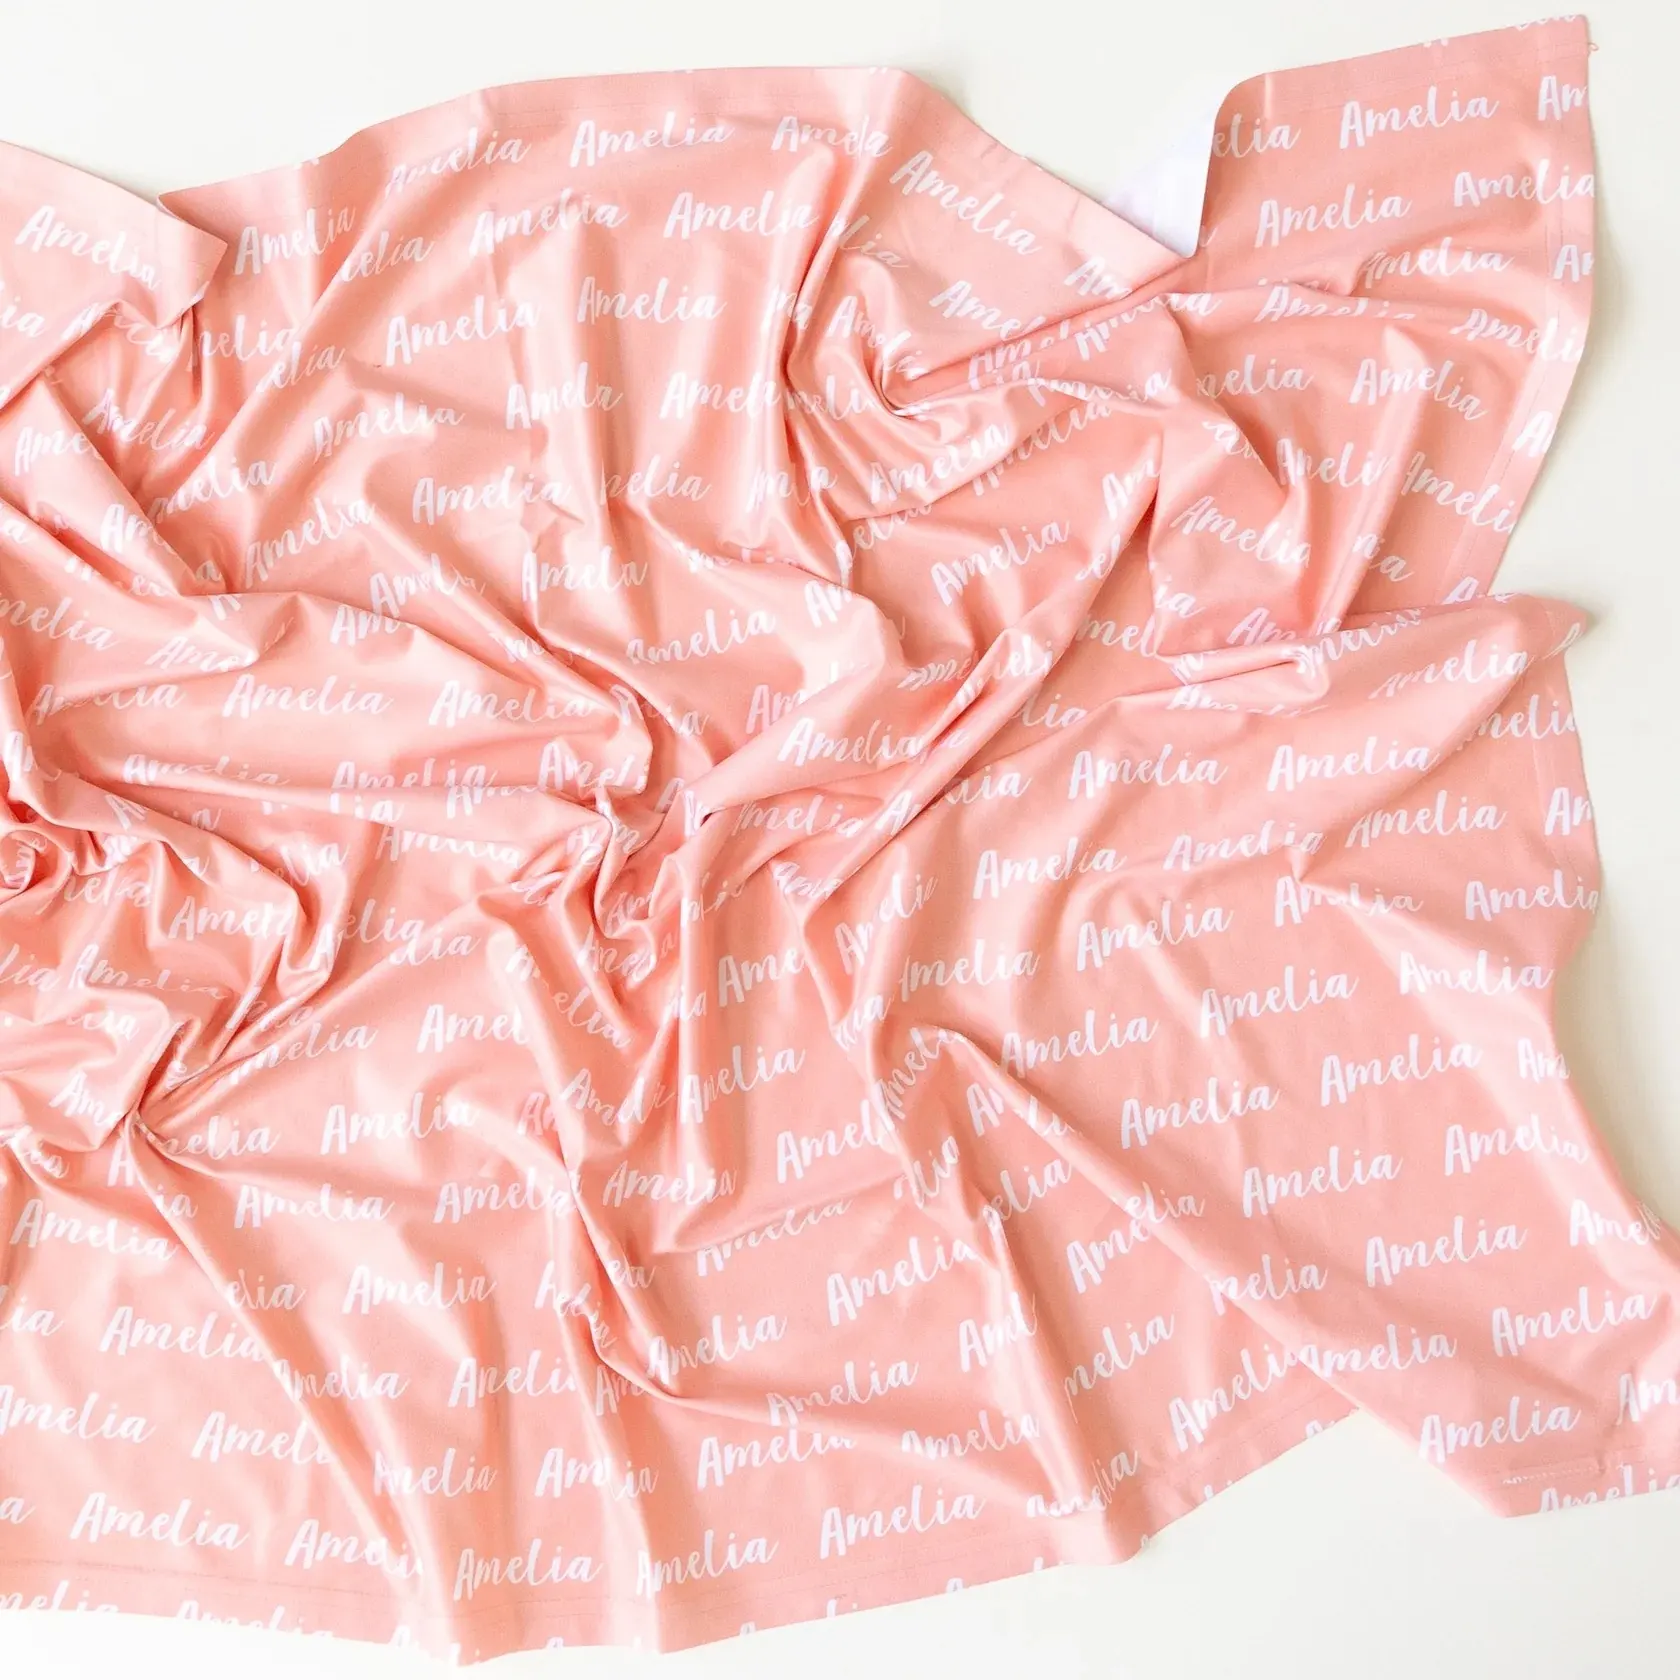 Manta de Jersey elástica personalizada manta de nombre de bebé recién nacido regalo de recepción